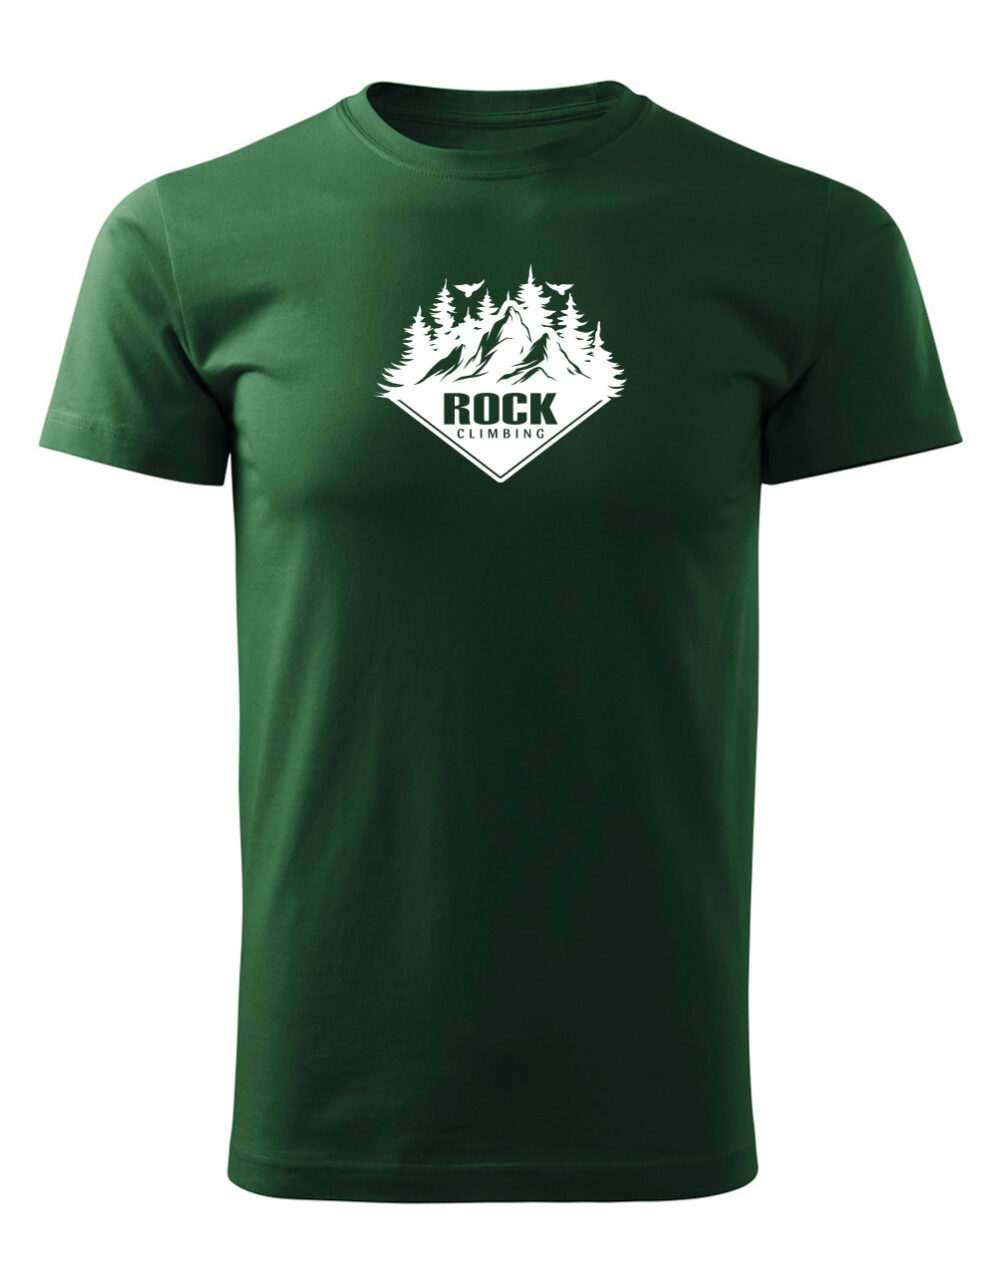 Pánské tričko s potiskem Rock climbing lahvově zelená